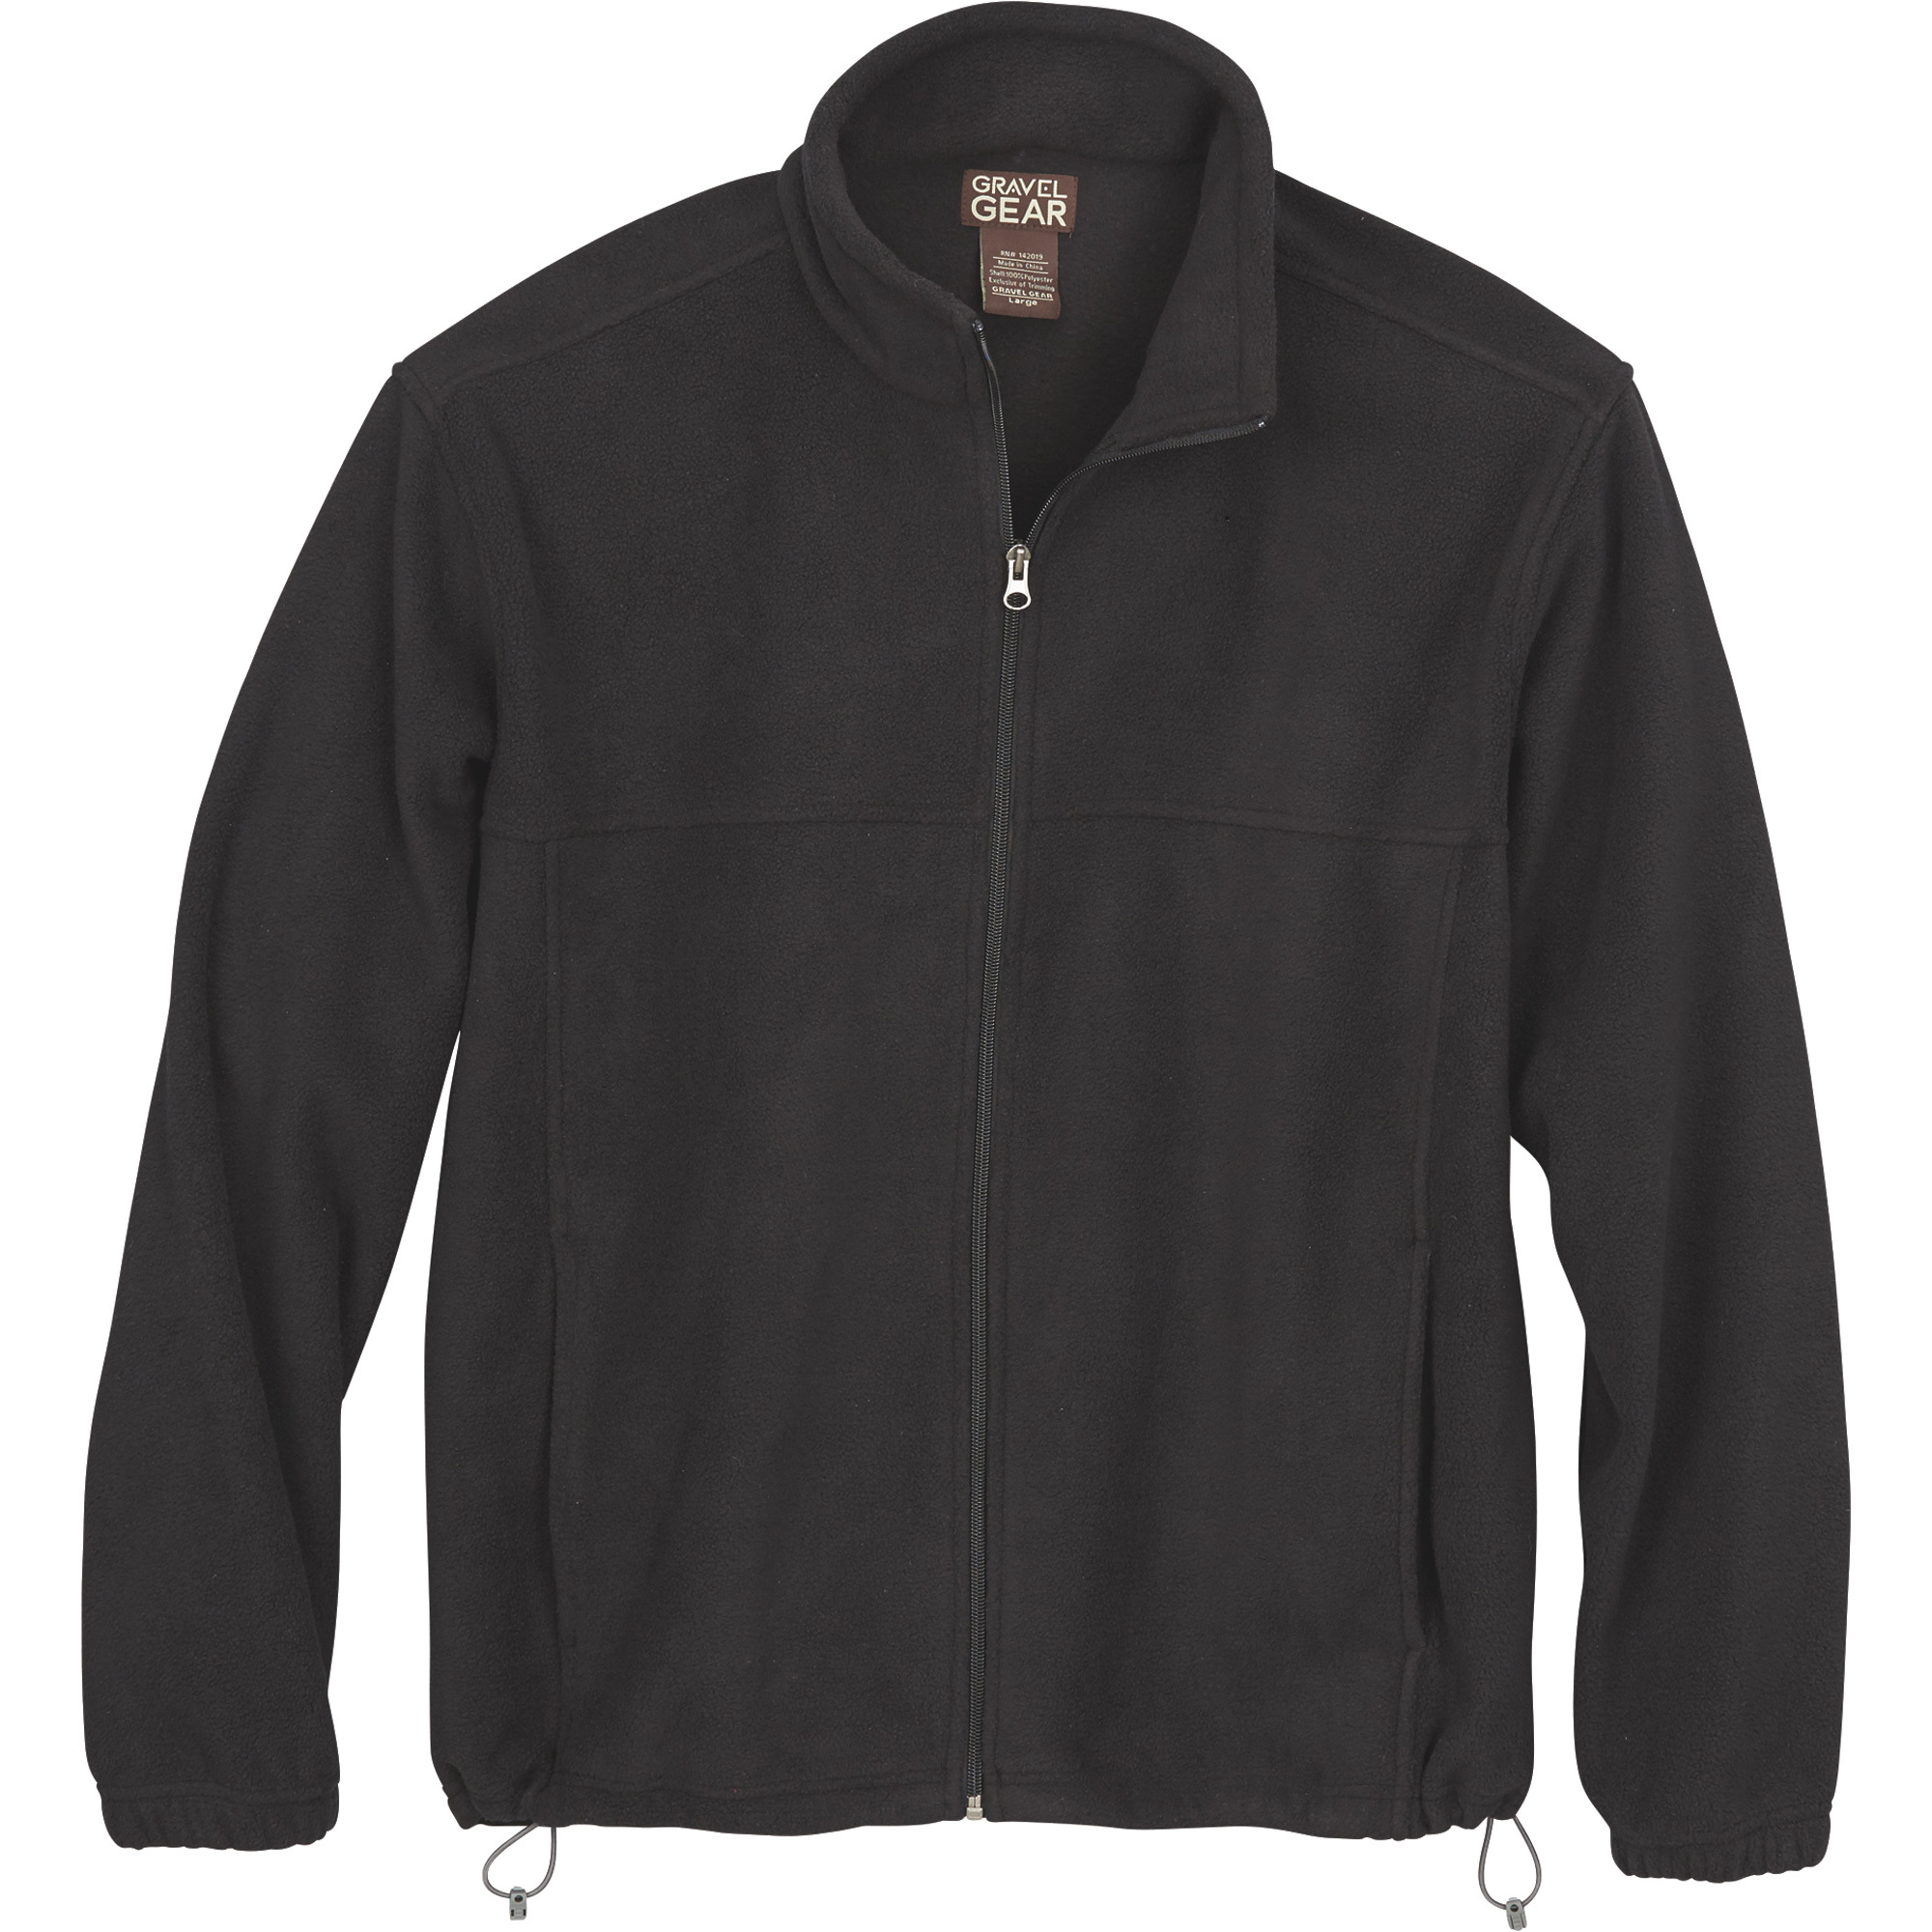 Gravel Gear Men's Zip-Up Fleece Jacket â Black, Medium